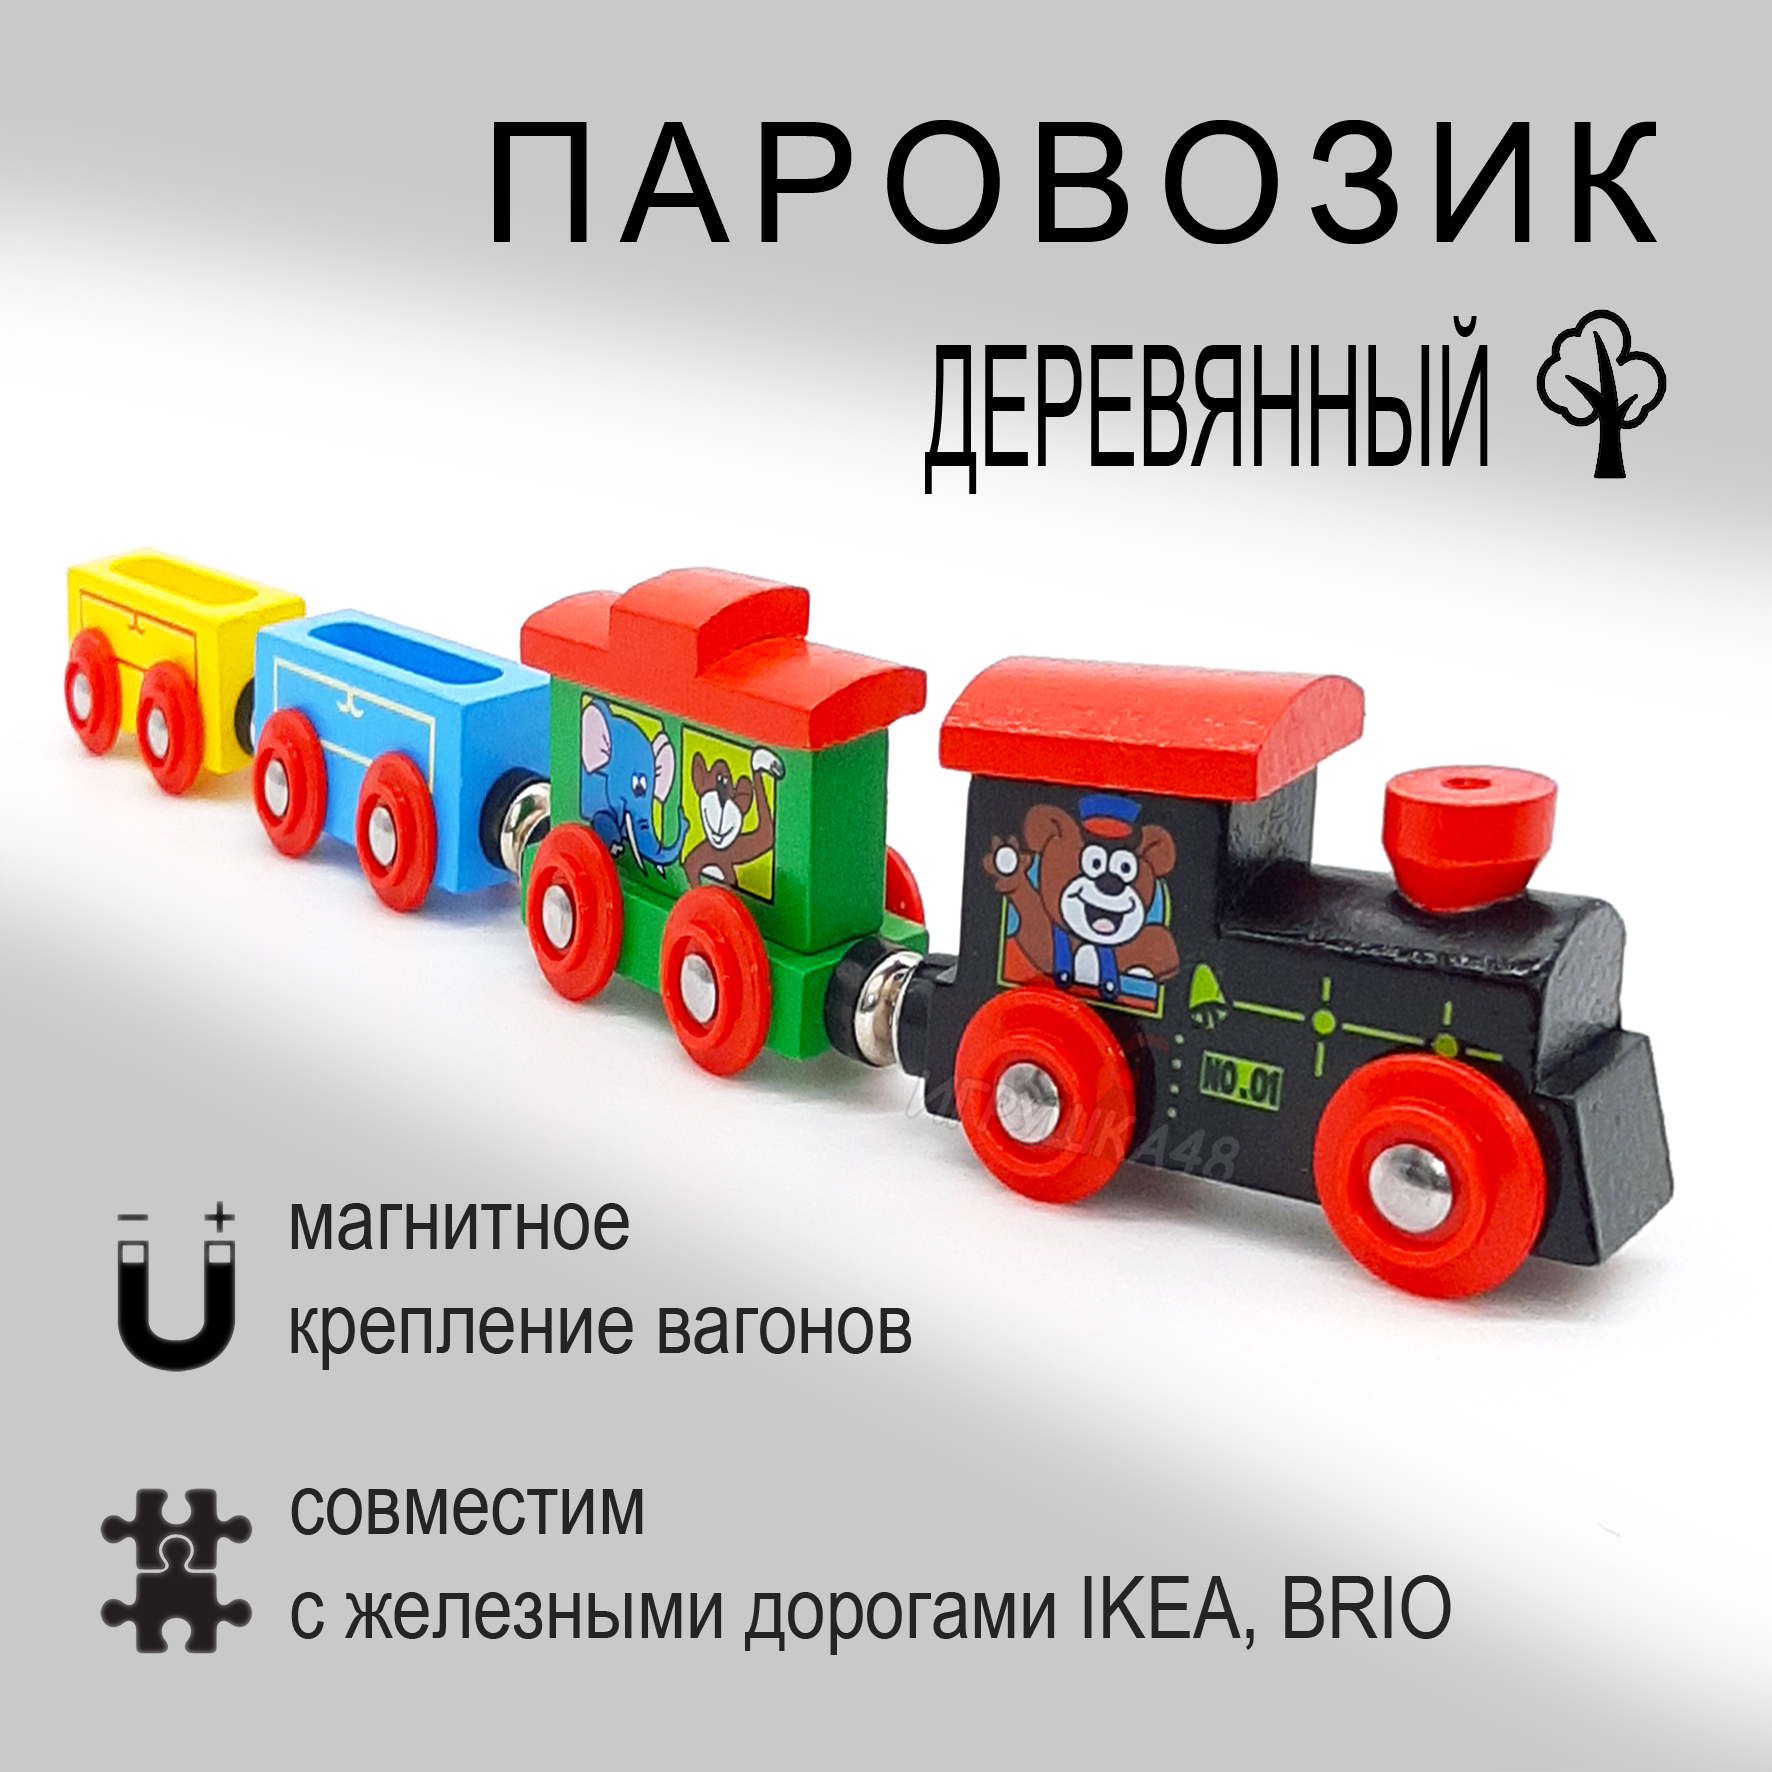 Паровозик магнитный деревянный для игровой железной дороги, Зверюшки паровозик сэлли в блистере роботы поезда